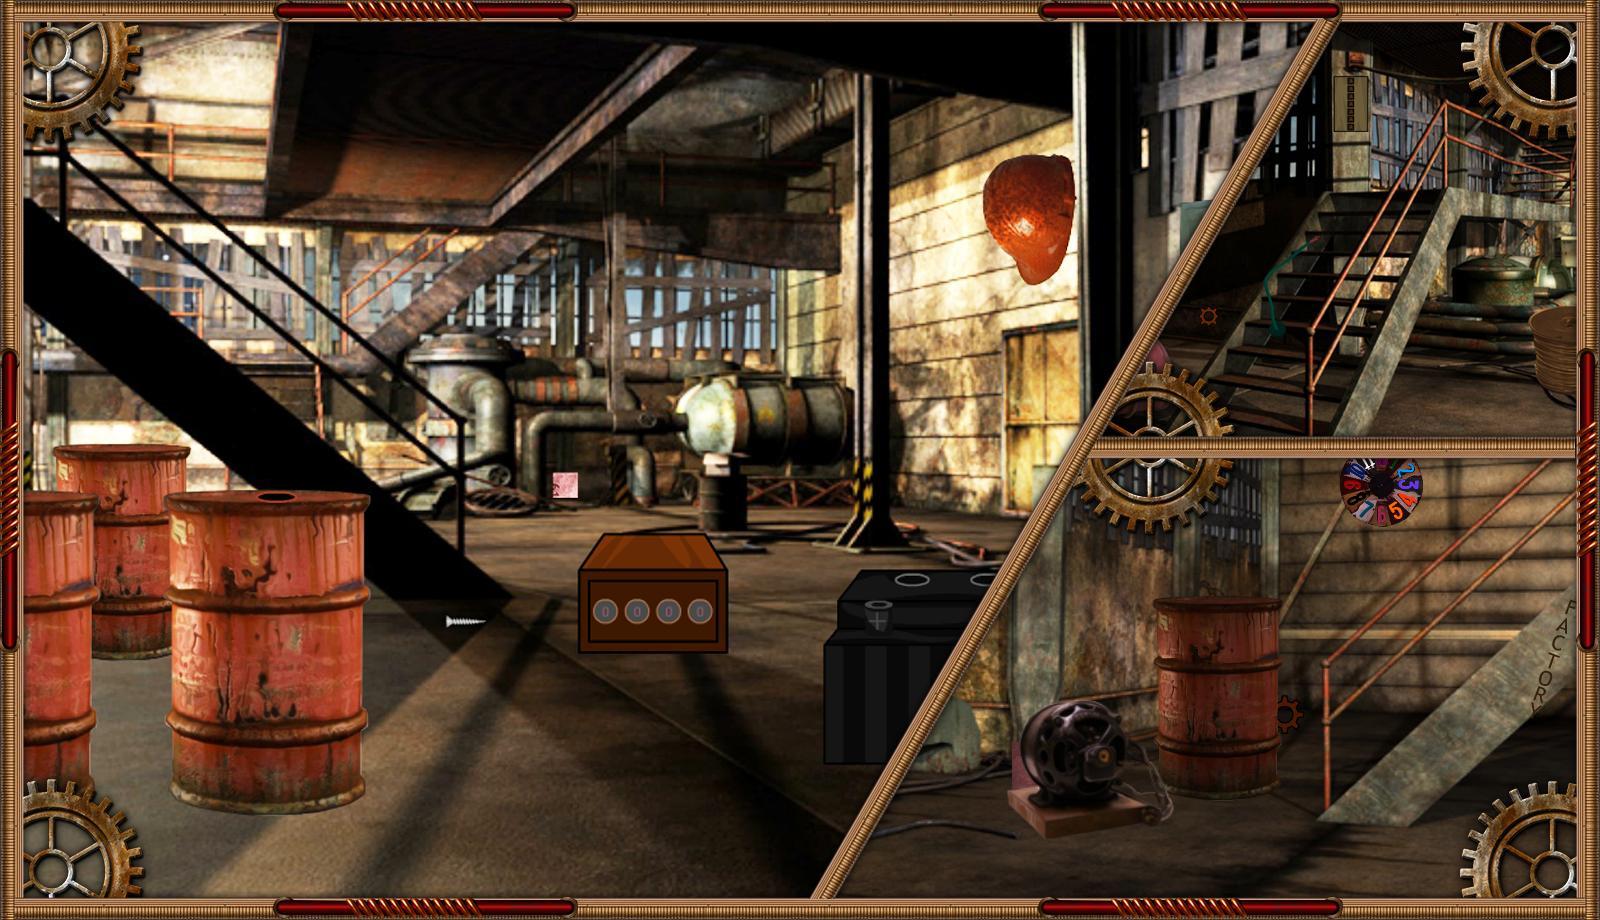 Screenshot 1 of Trò chơi trốn thoát - Series Nhà máy bỏ hoang 1.0.4